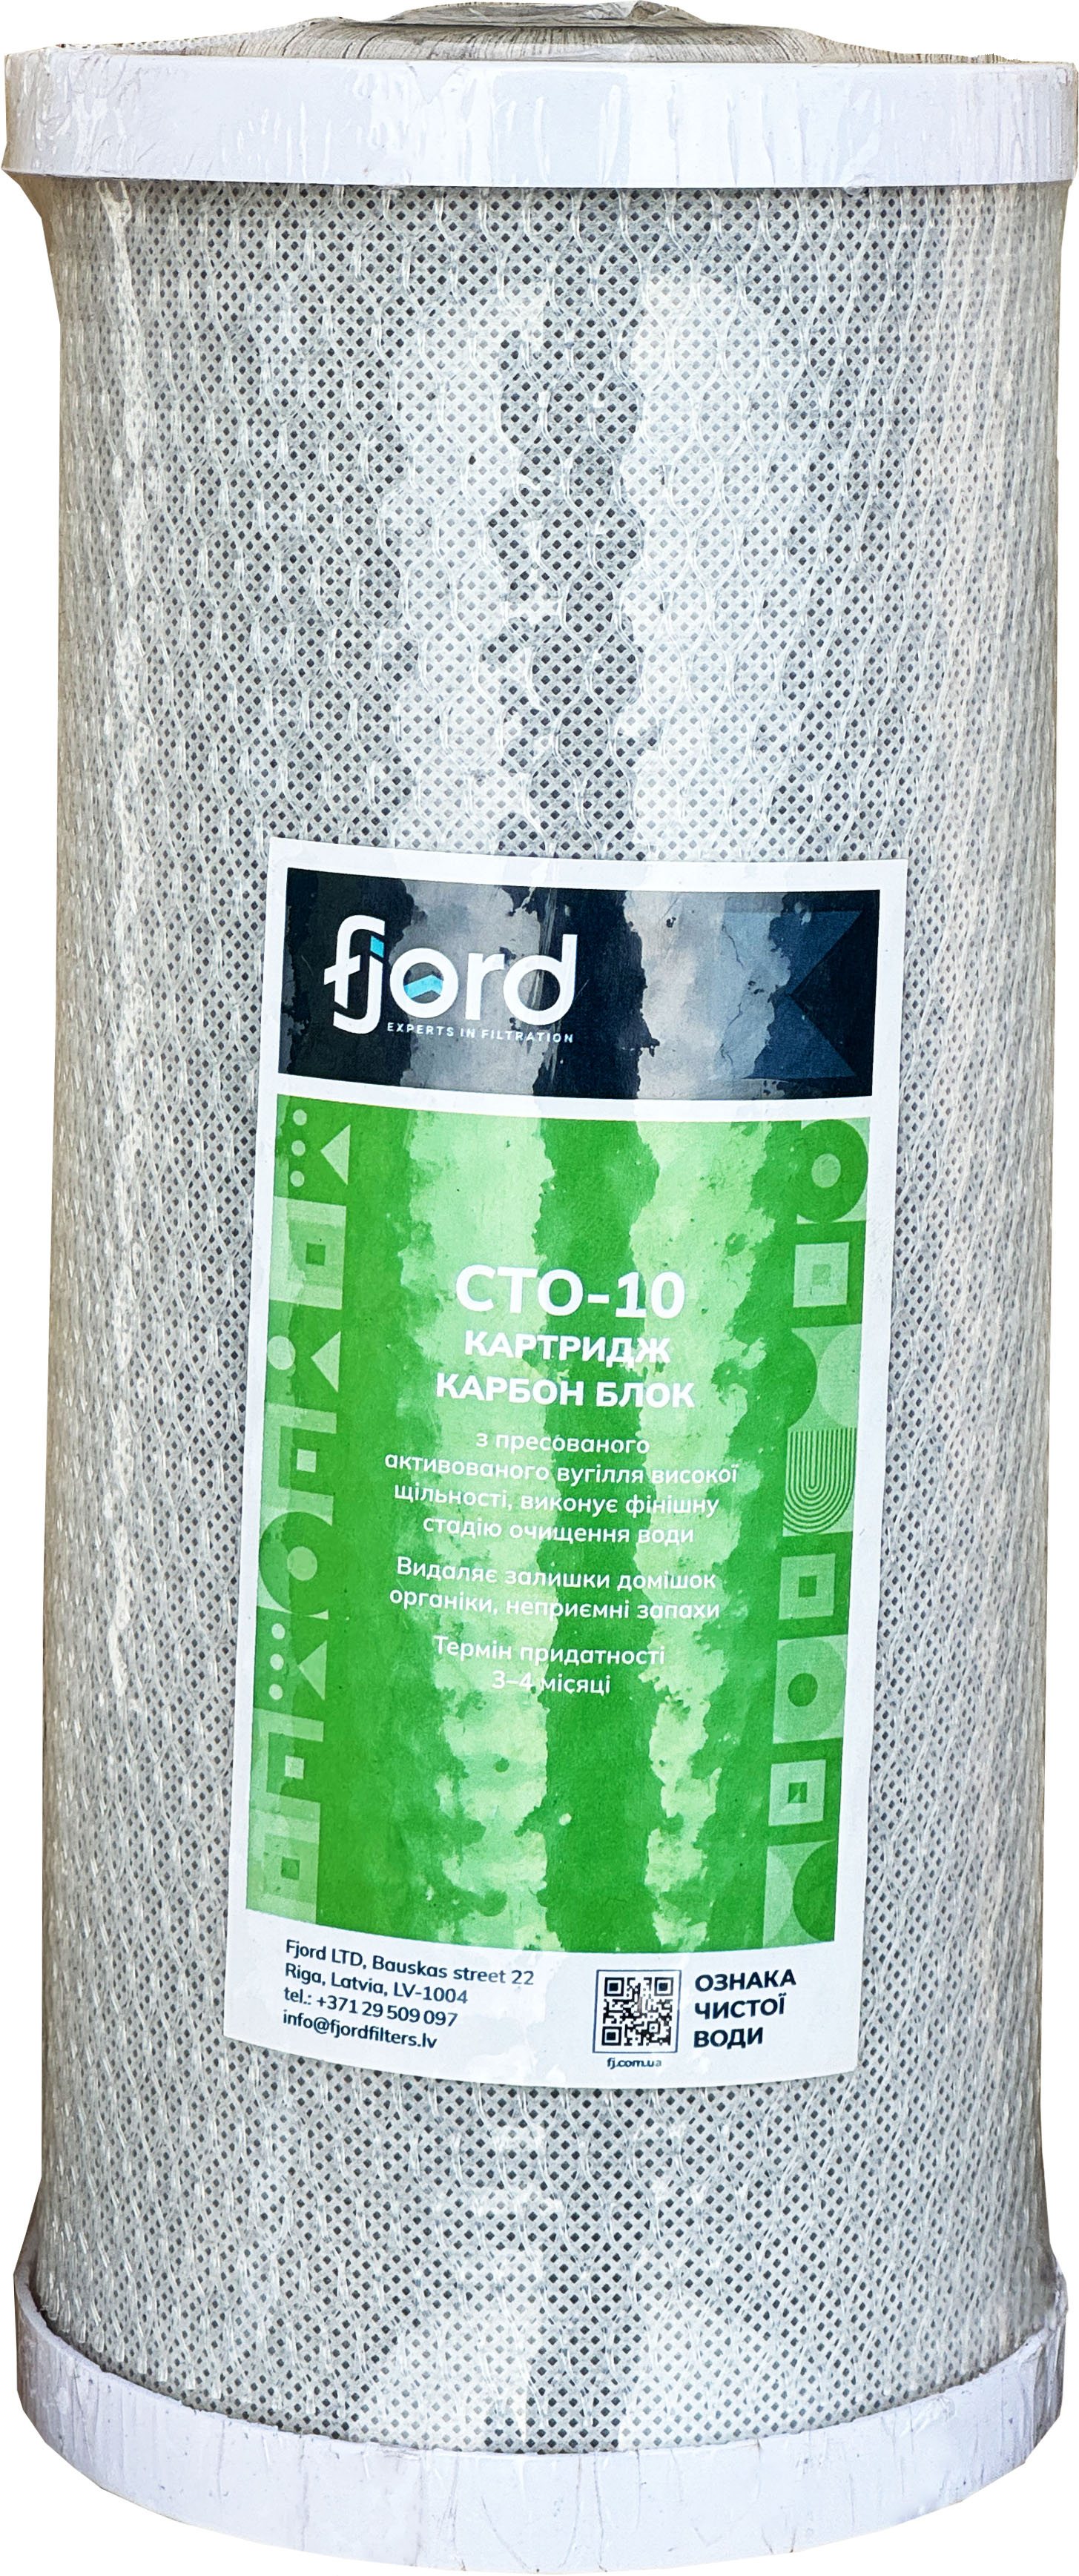 Картридж для фильтра Fjord CTO-BB10 (уголь) в интернет-магазине, главное фото